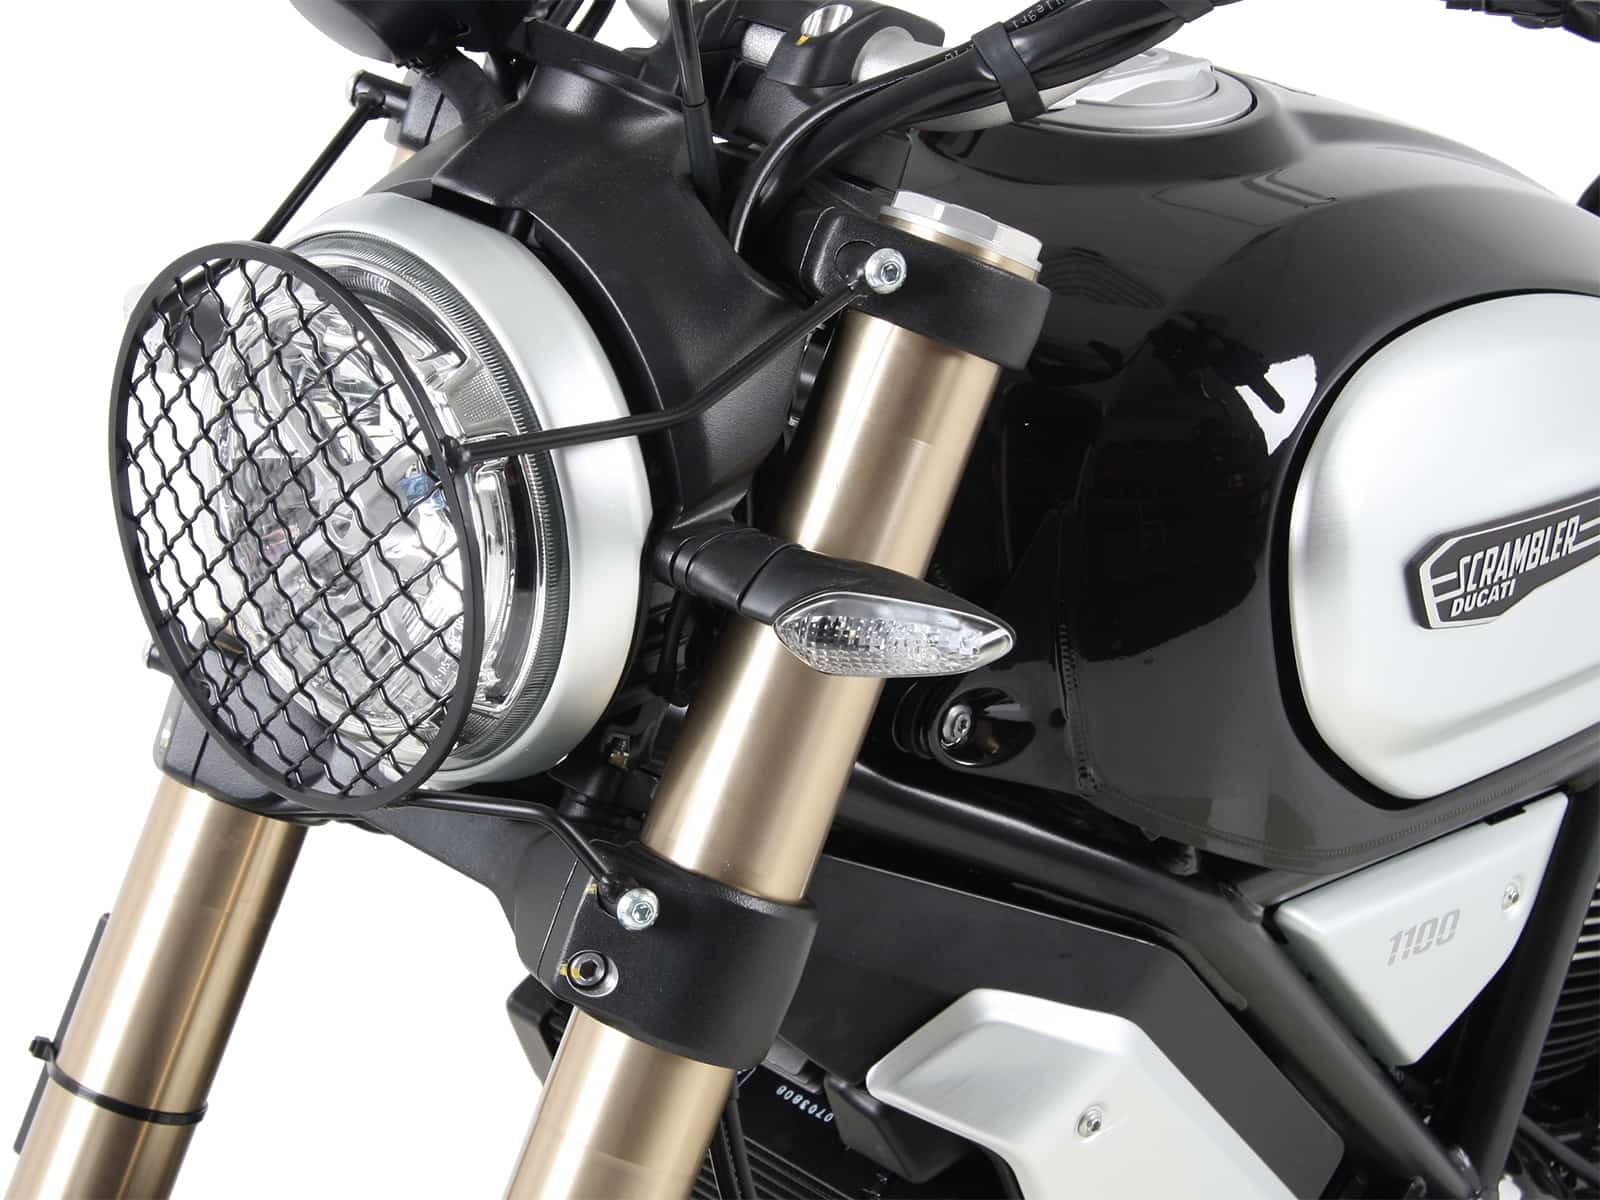 Hepco en Becker koplamp bescherming Ducati Scrambler 1100 vanaf 2018